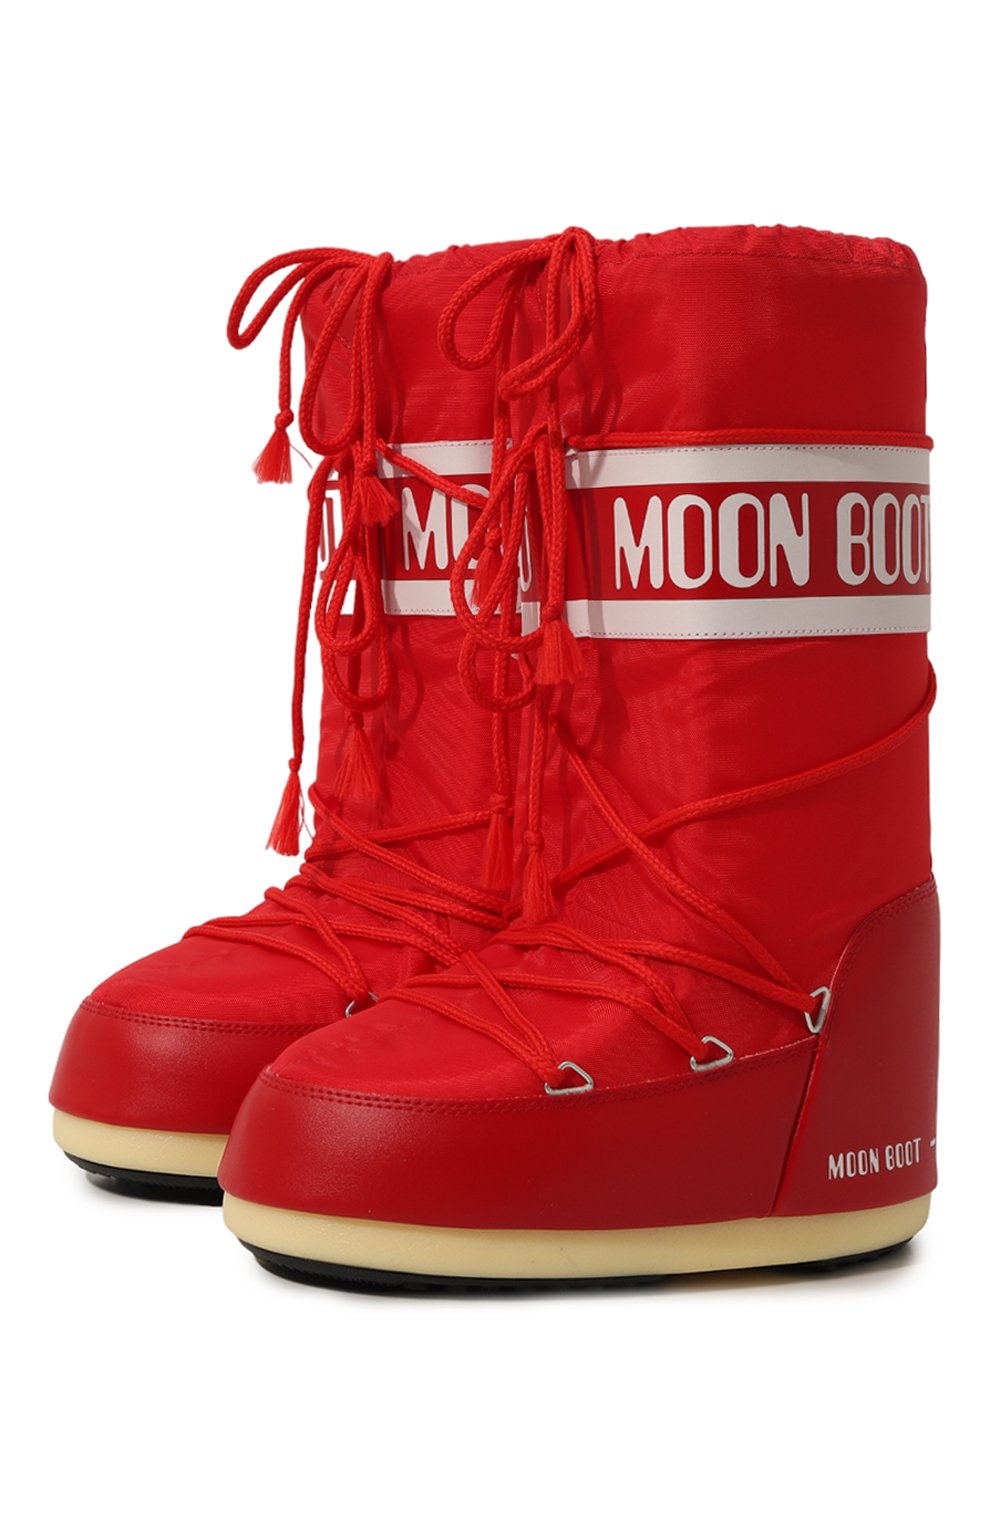 Сапоги Moon Boot, Комбинированные сапоги Icon Moon Boot, Босния и Герцеговина, Красный, Текстиль: 70%; Полимер: 30%; Подошва-резина: 100%; Подкладка-текстиль: 100%; Стелька-текстиль: 100%;, 10654392  - купить